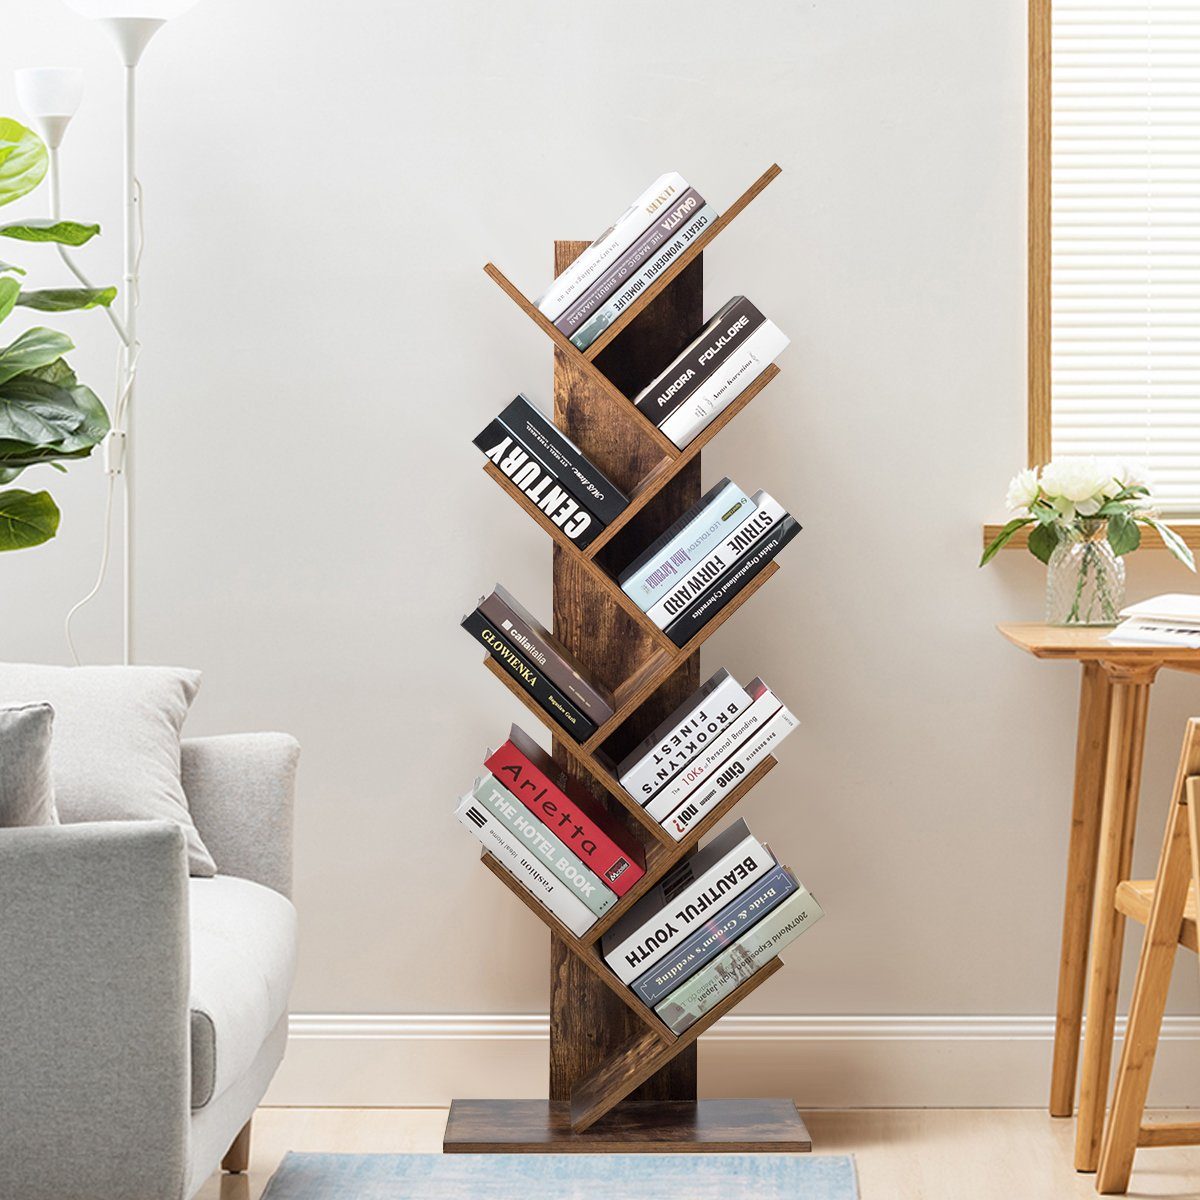 COSTWAY Bücherregal Standregal in mit Baumform 9 Ebenen, 51x28x140cm Holz